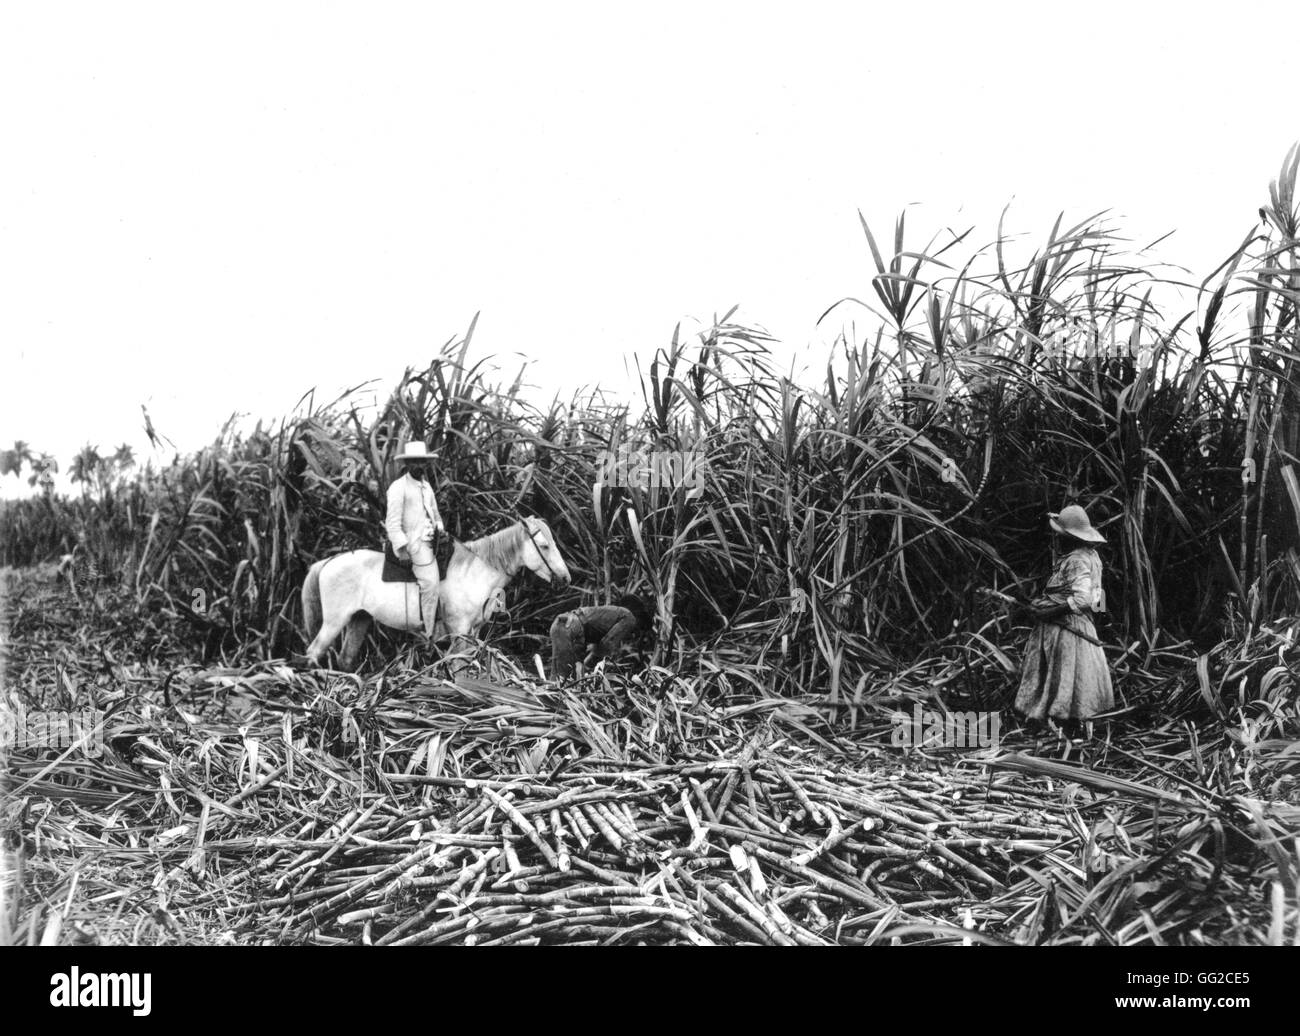 La récolte de la canne à sucre dans une plantation c.900 Cuba Washington, Médiathèque de Congress Banque D'Images